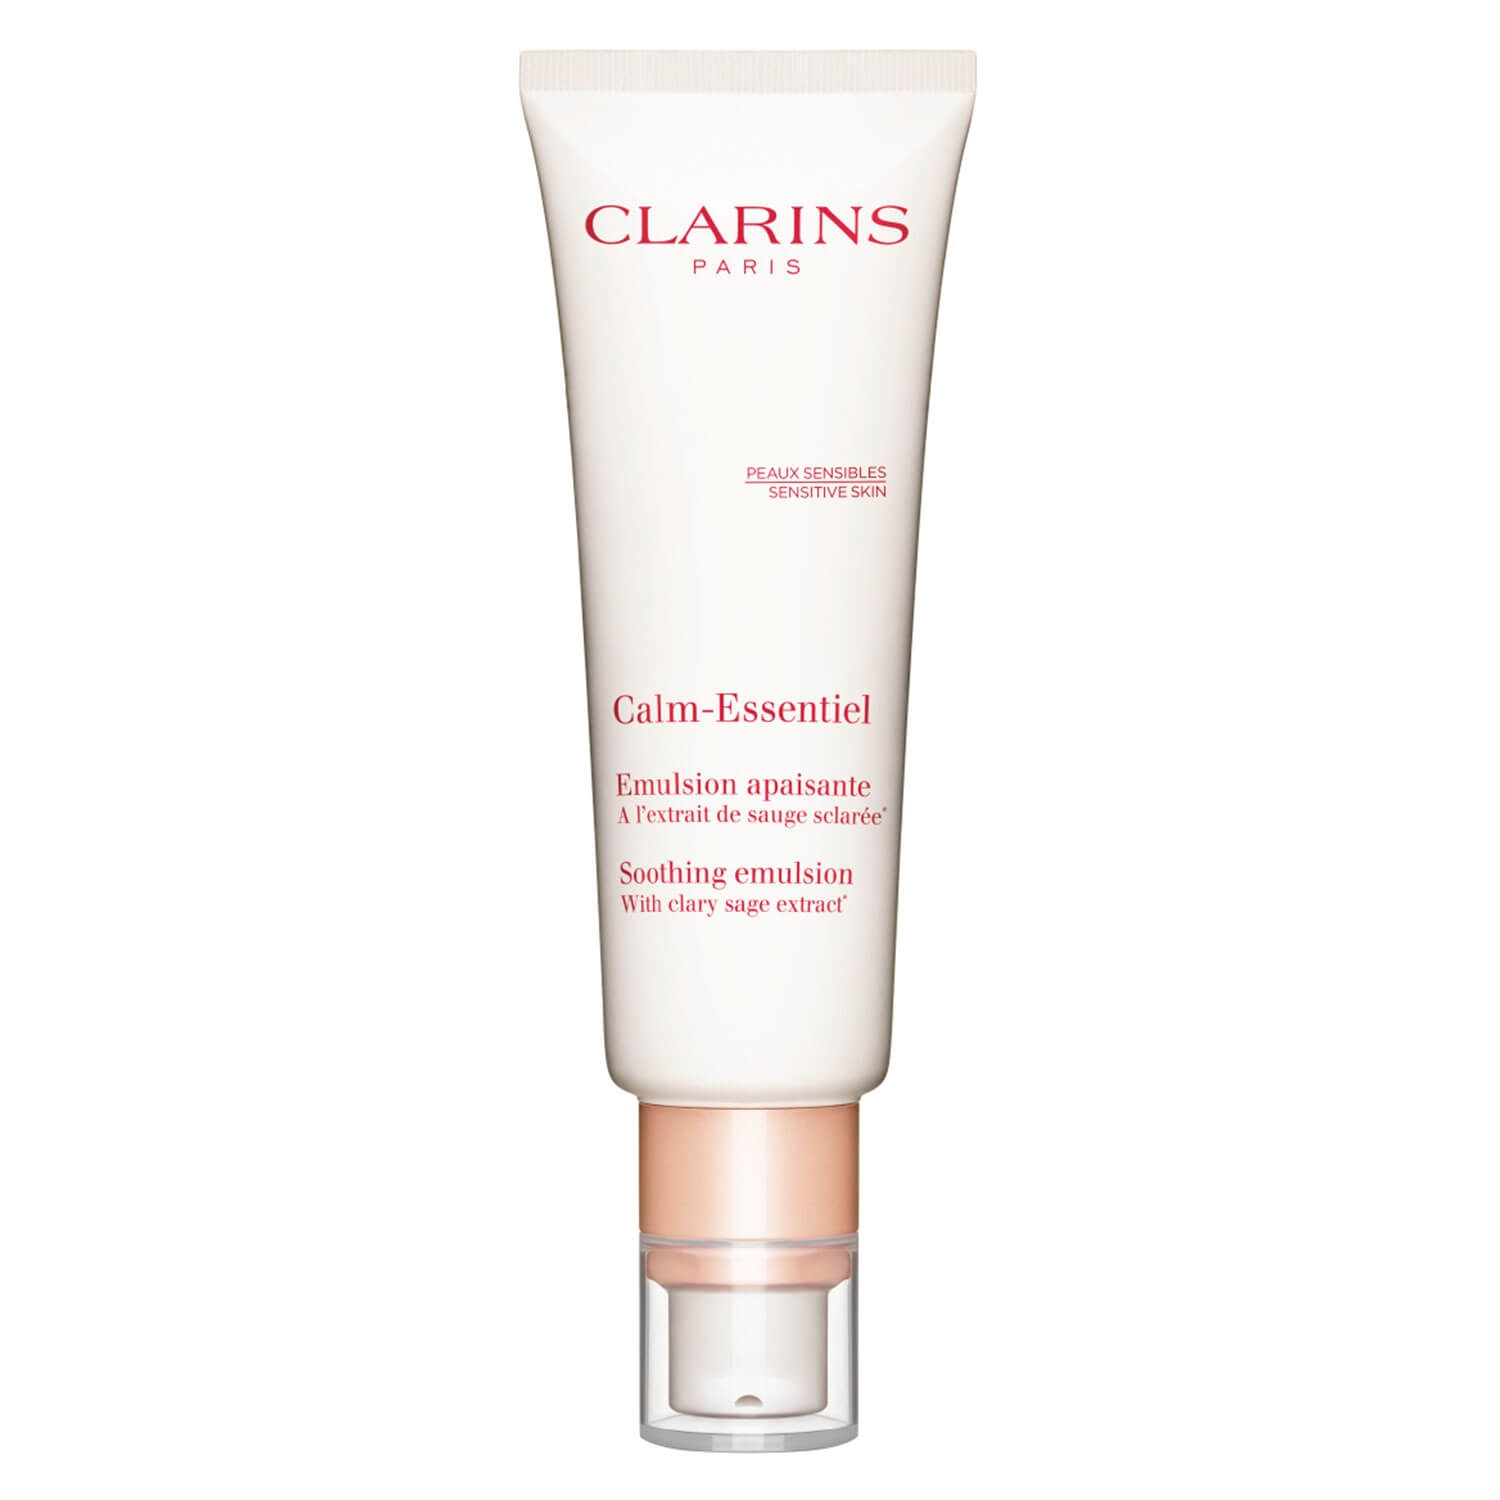 Produktbild von Clarins Skin - Emulsion Apaisante Calm-Essentiel